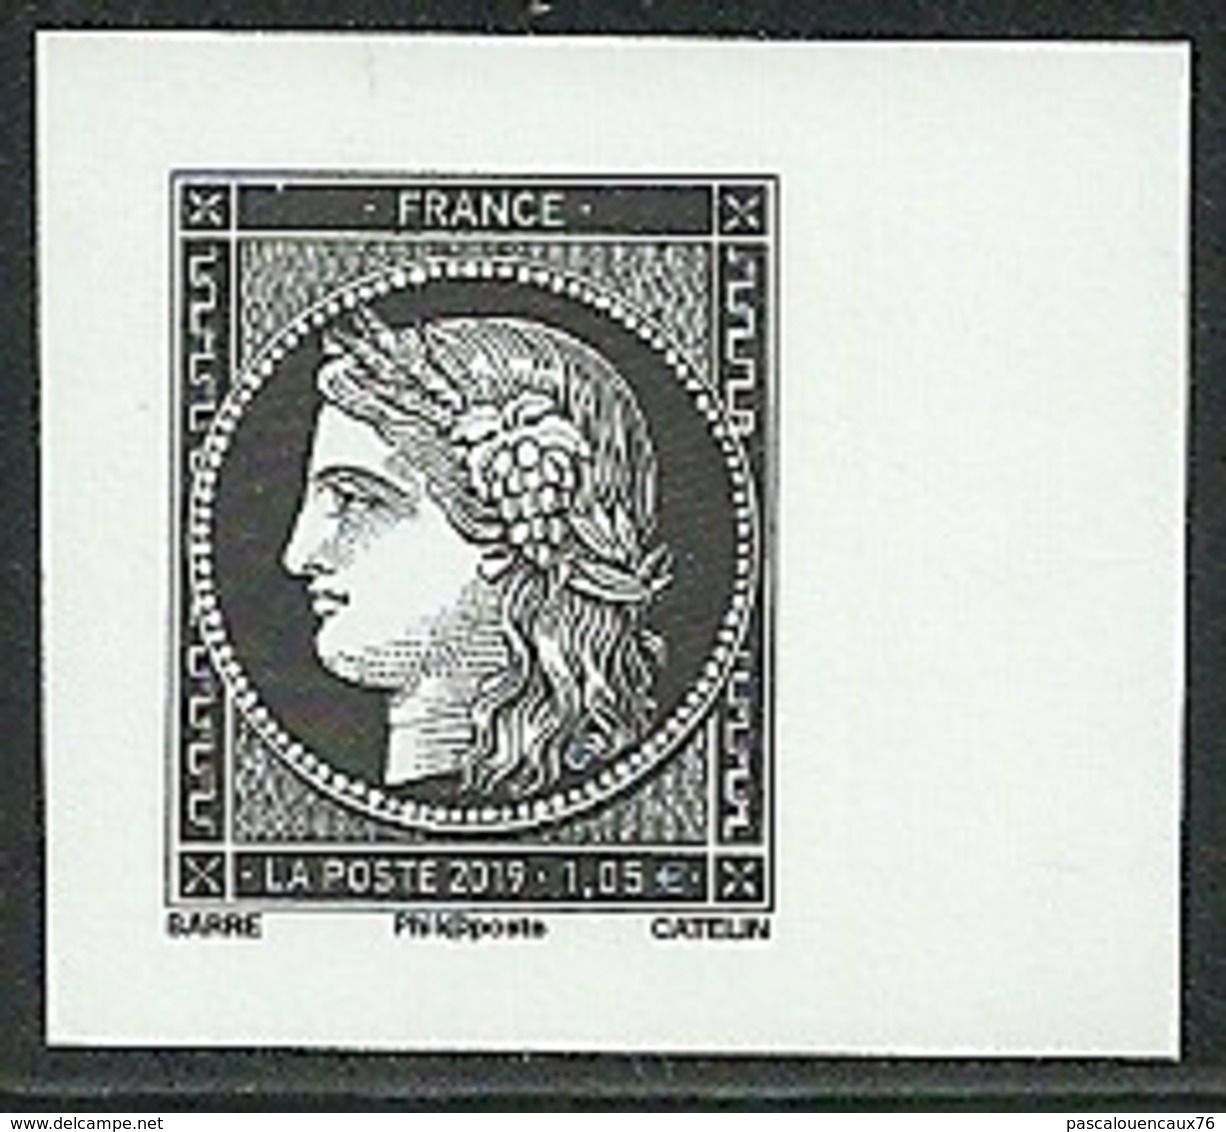 France 2019 - 170 Ans Cérès - Timbre Neuf ** Non-dentelé Issu Du Carnet L'Affranchissement - Unused Stamps